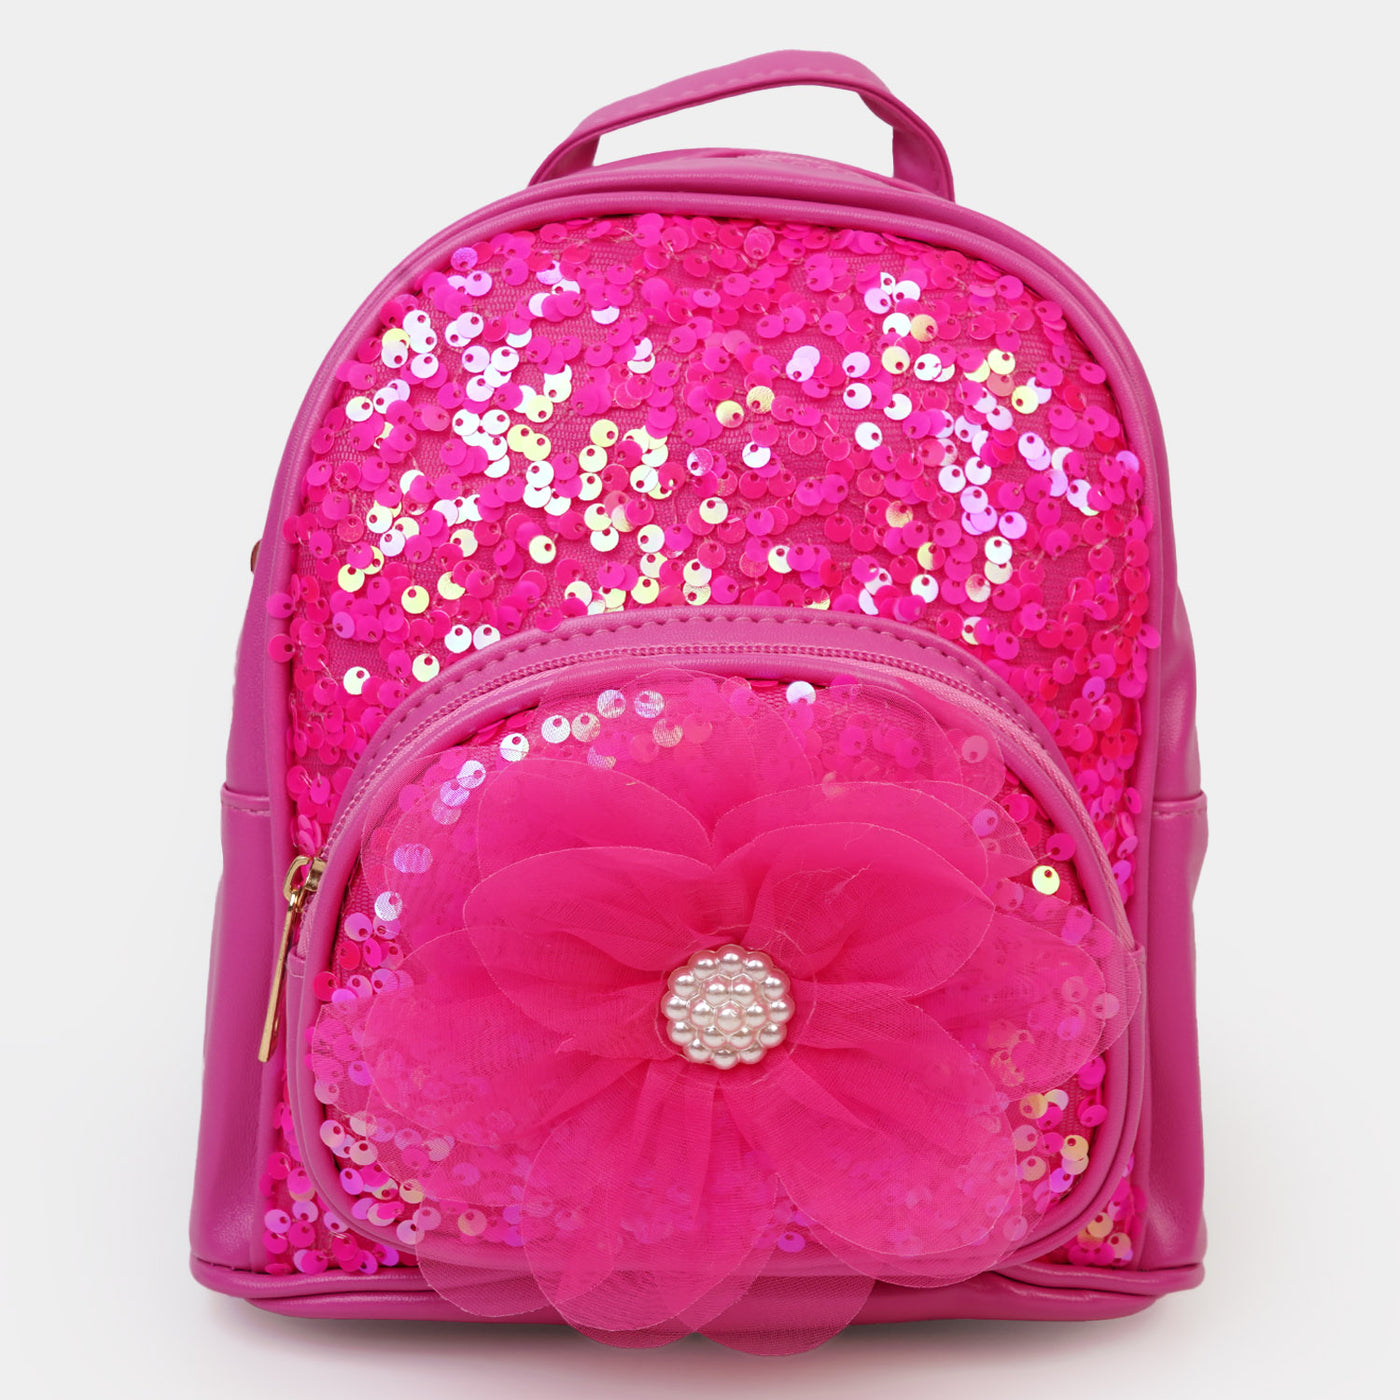 Fancy Backpack Multipurpose For Girls